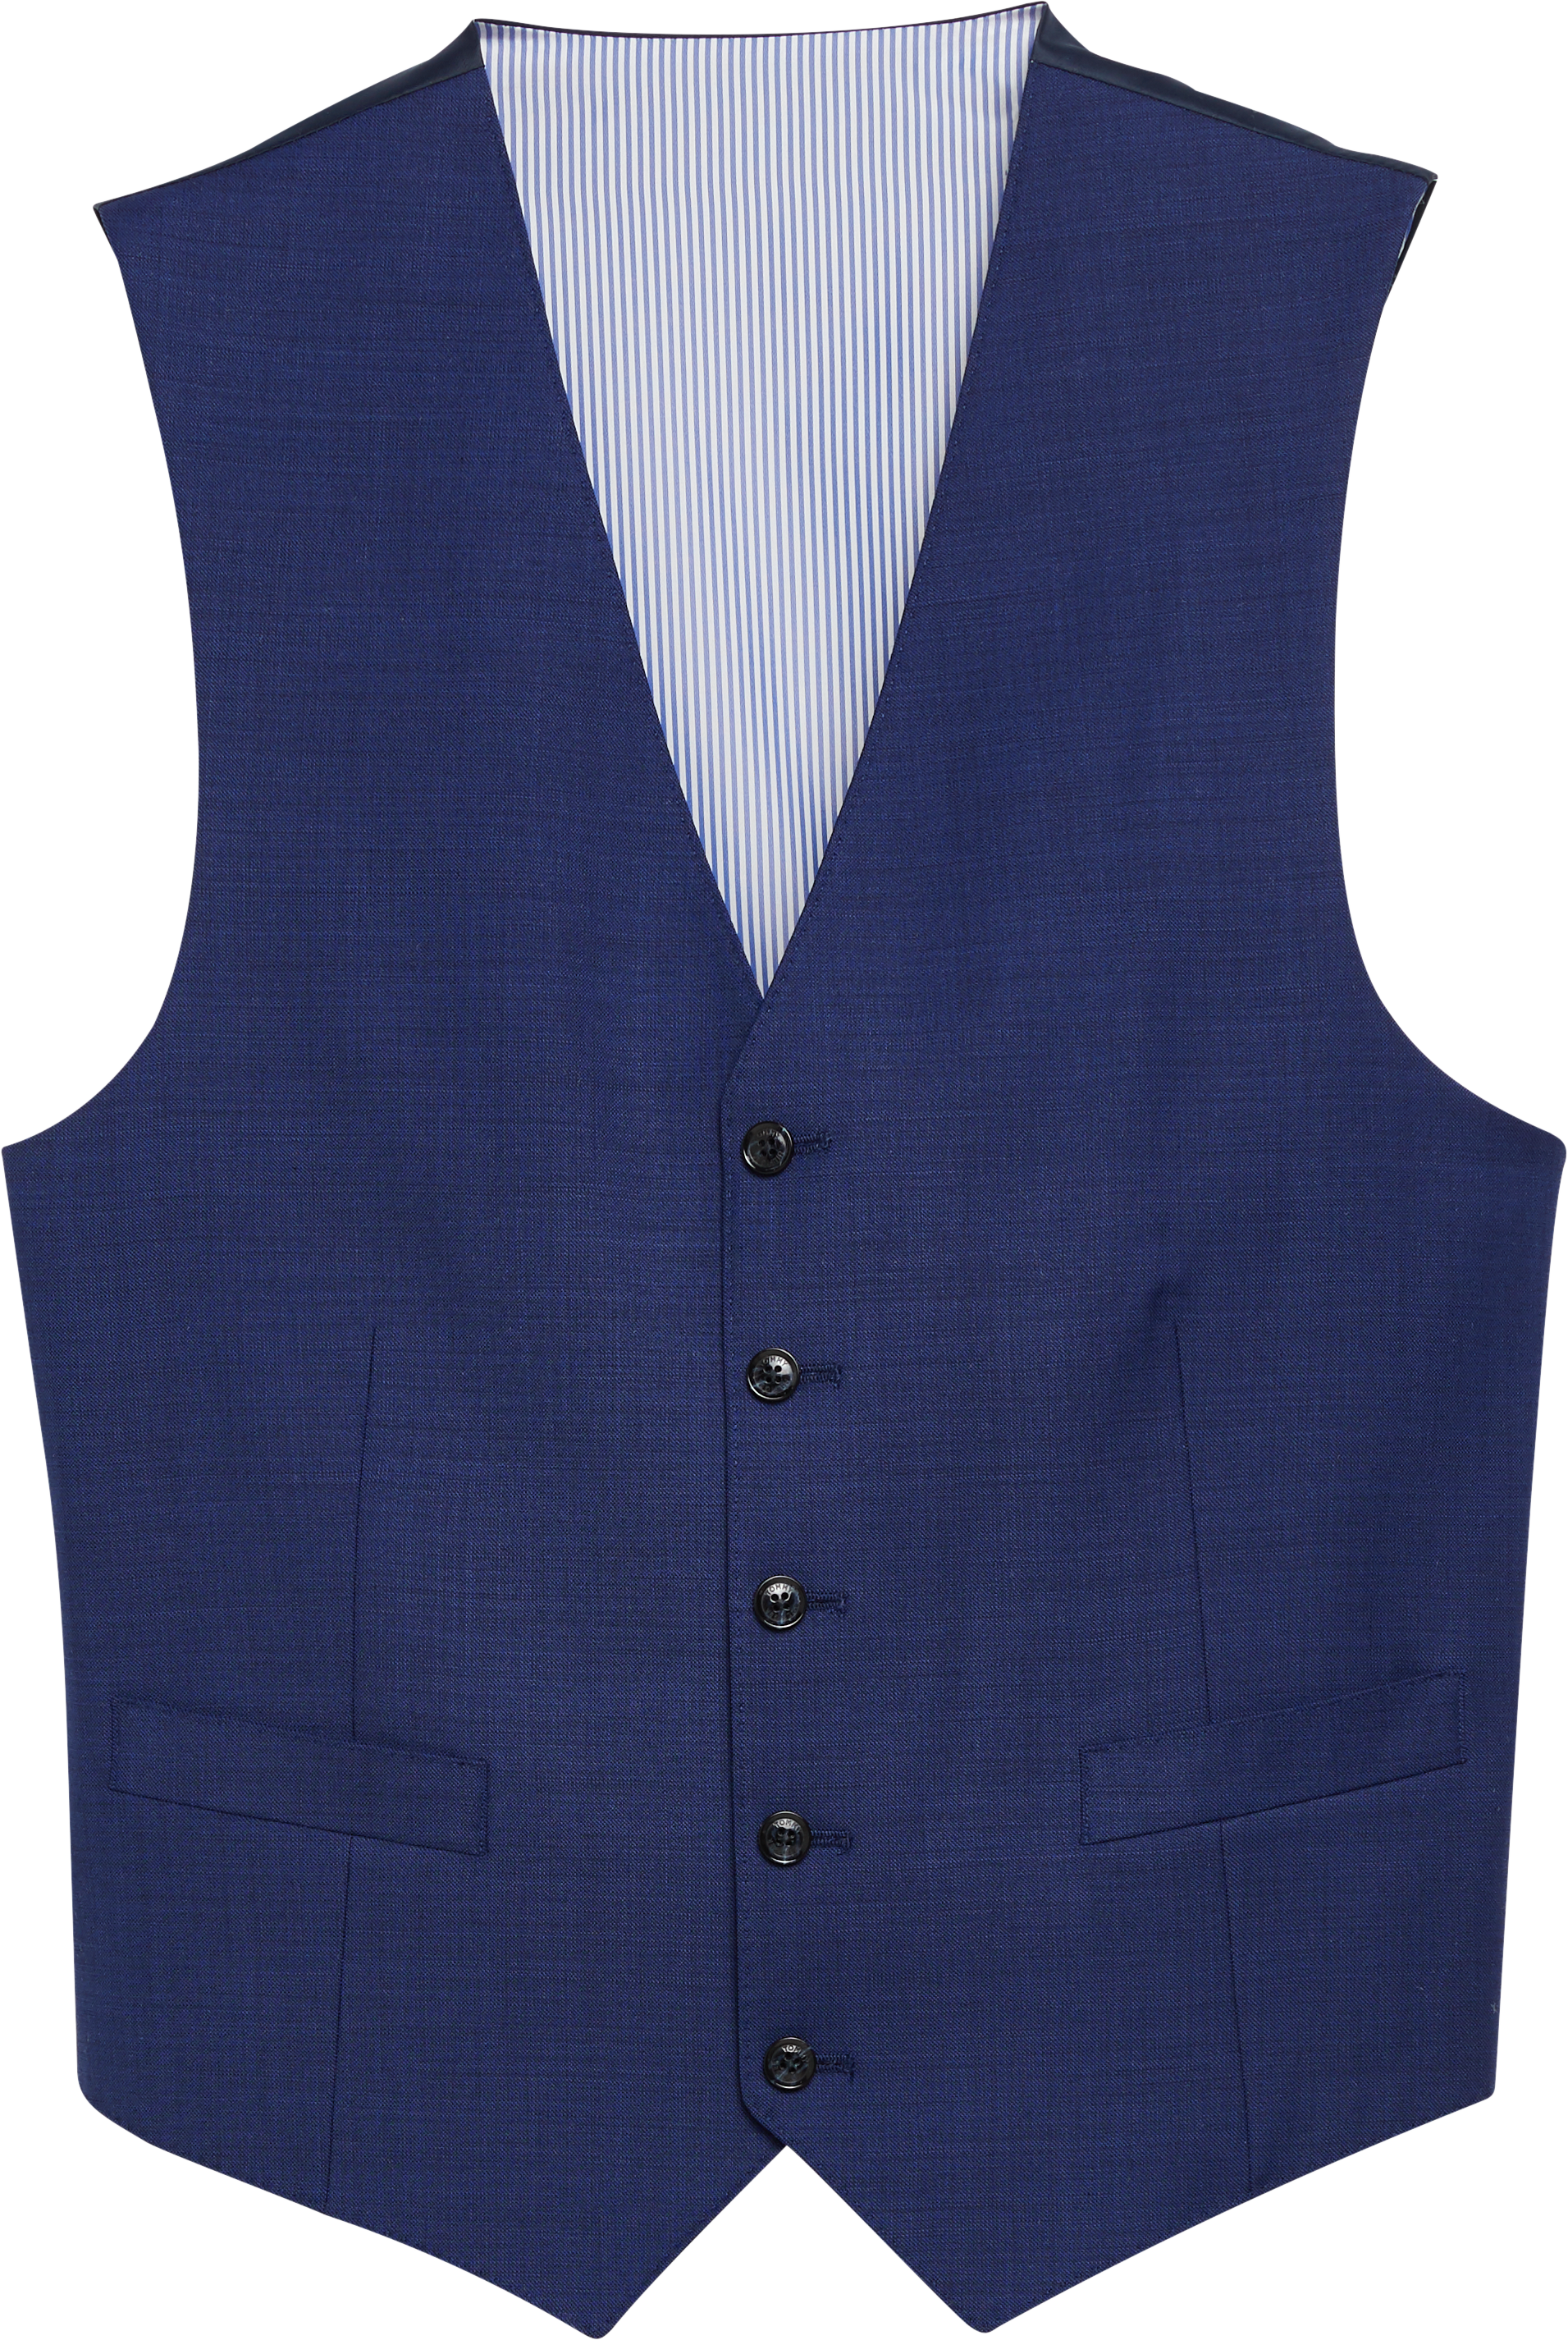 men's wearhouse tommy hilfiger suit